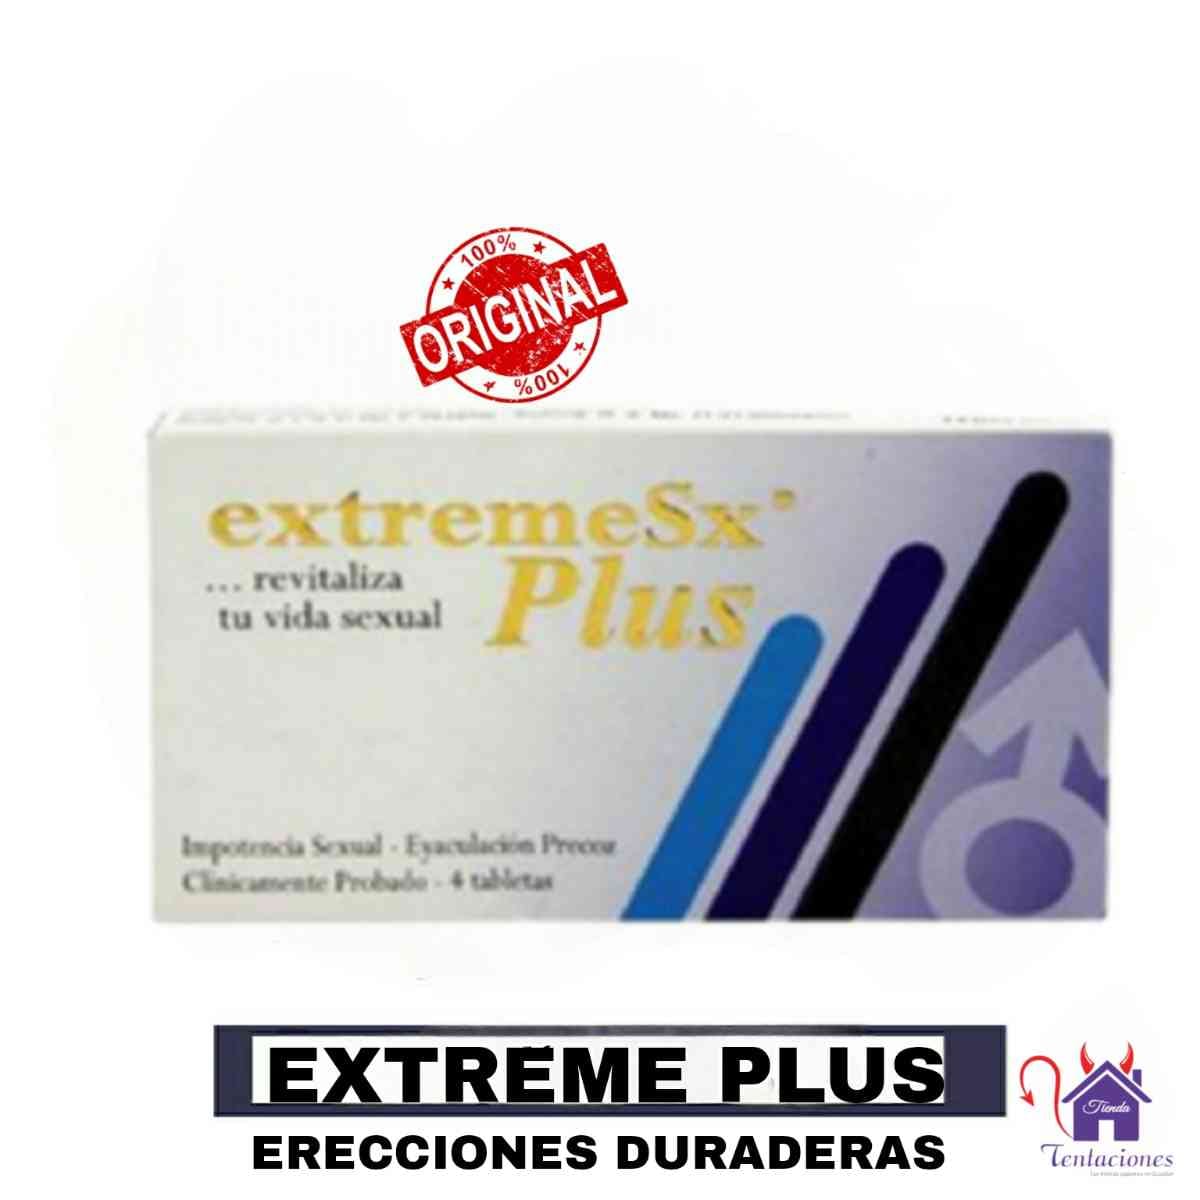 ExtremeSx Plus-Tienda Tentaciones-Sex Shop Ecuador